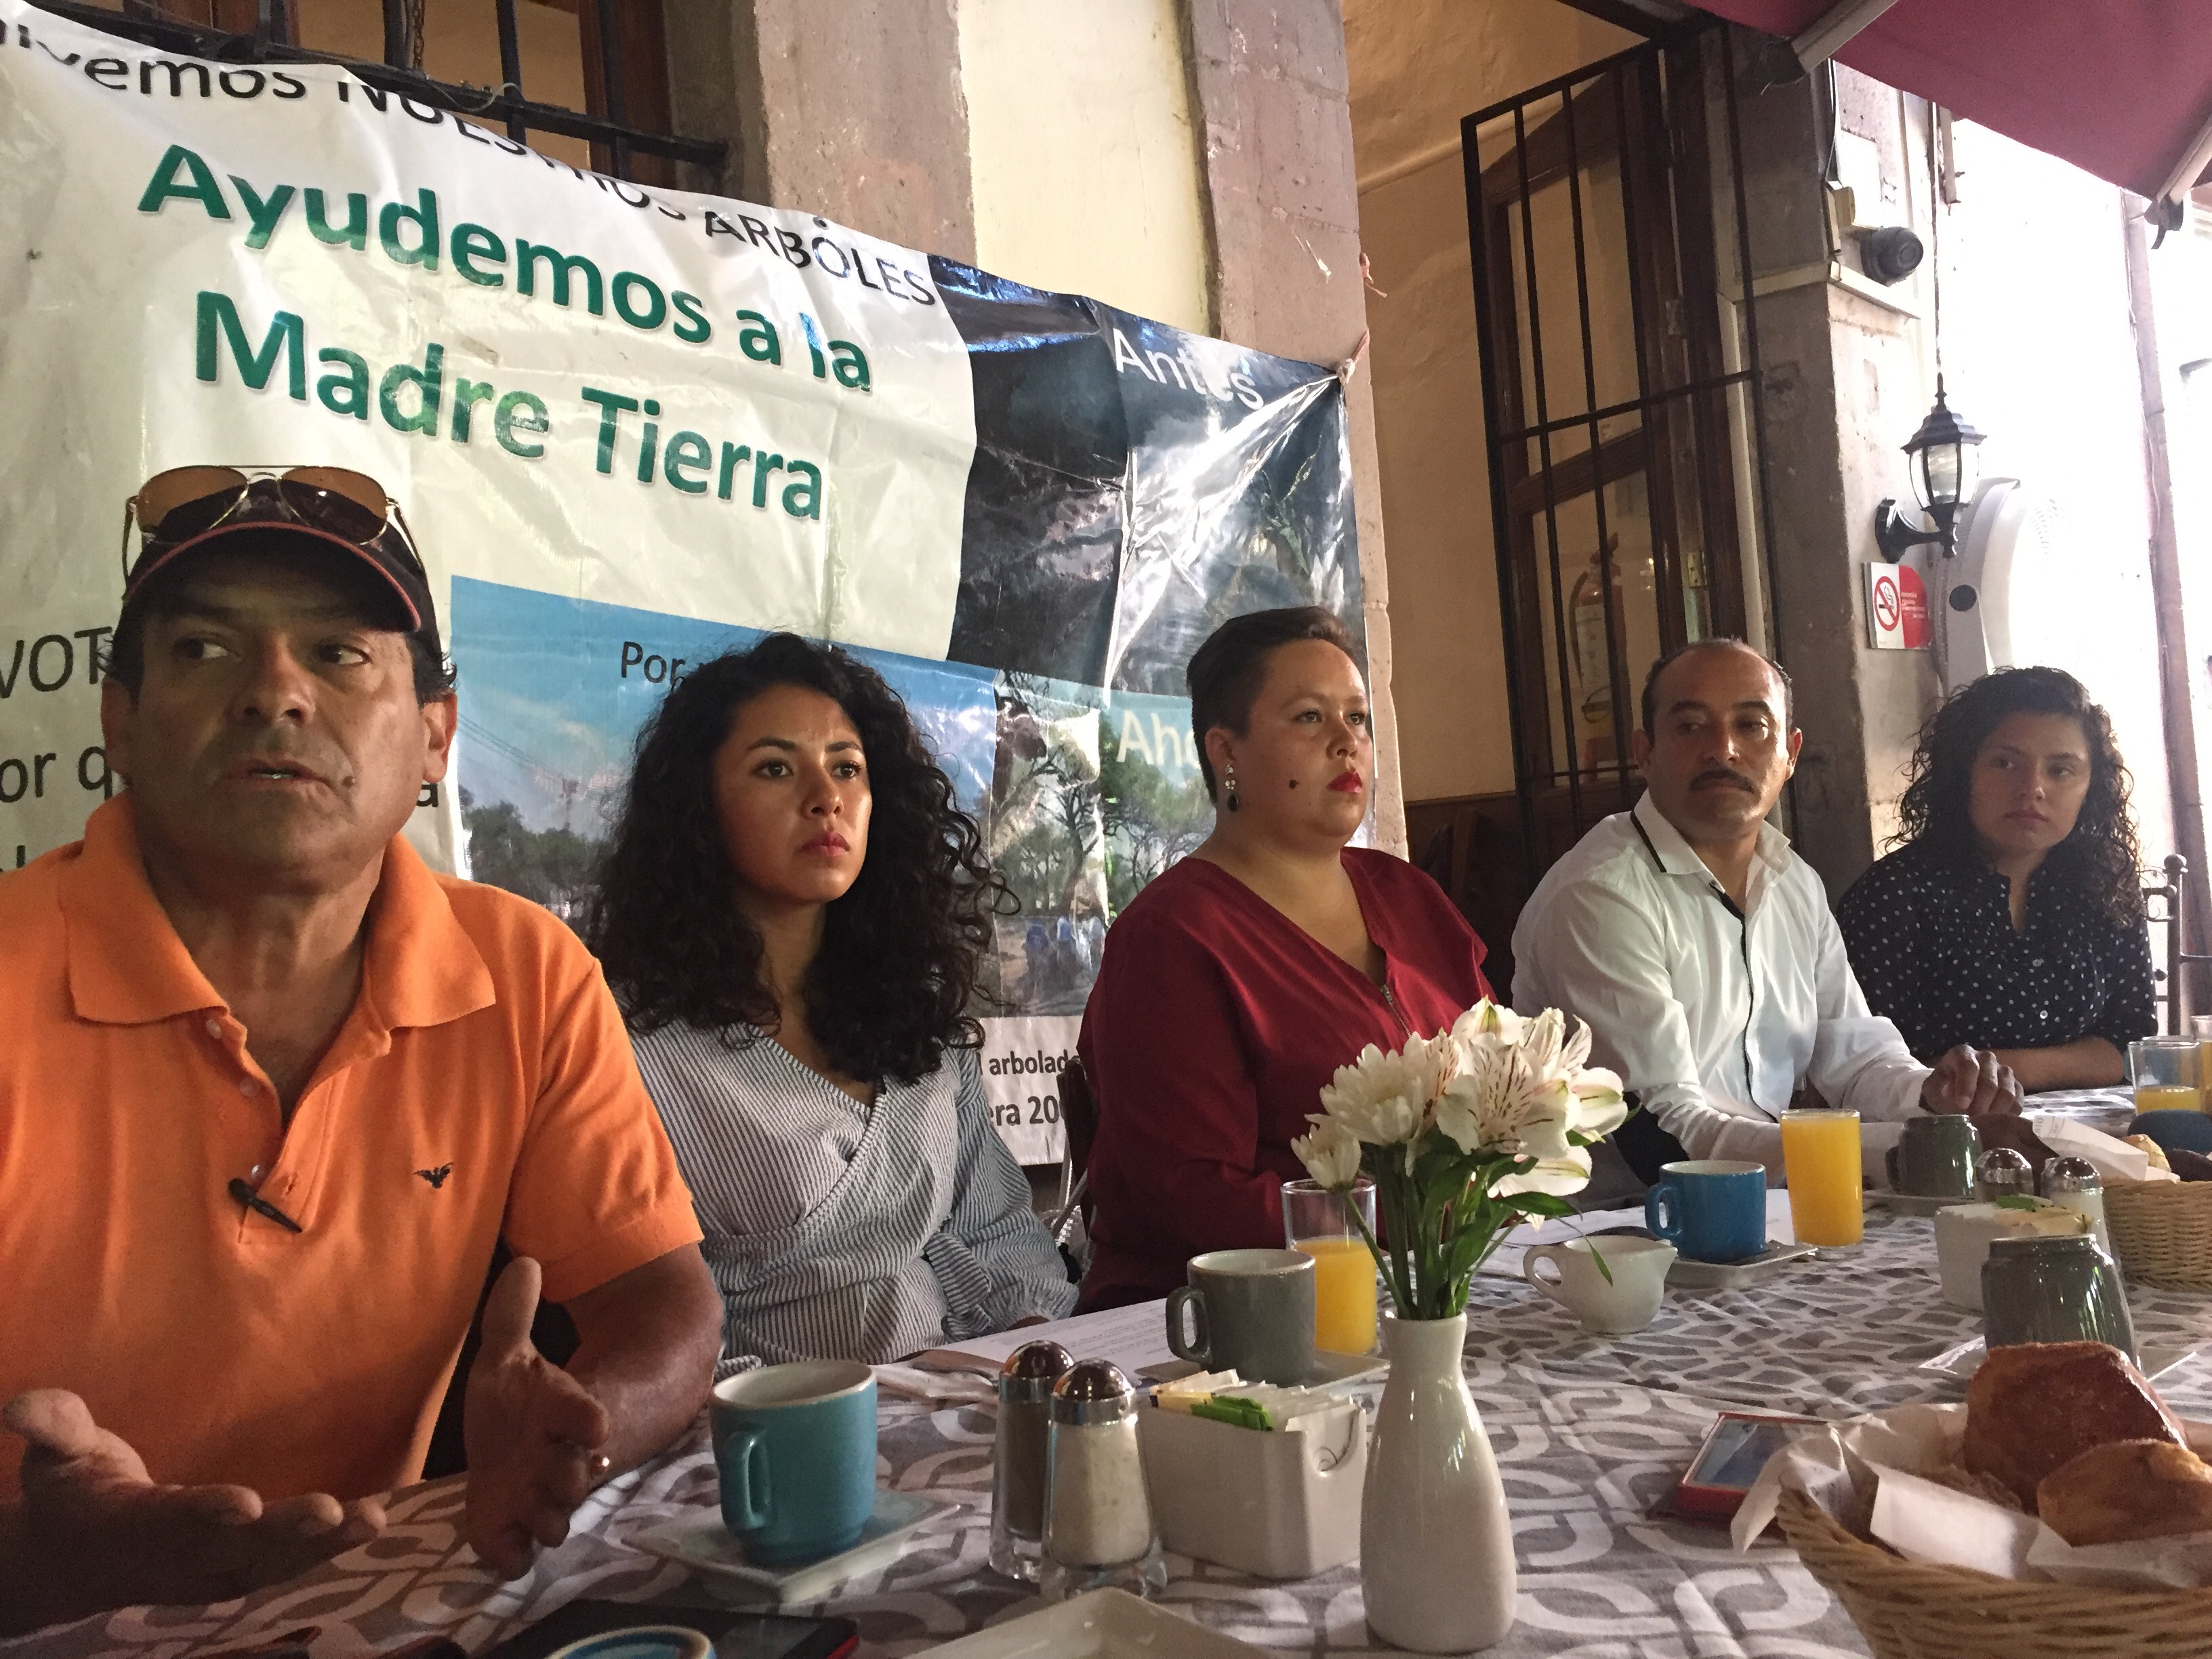  Habitantes de El Marqués buscan que ampliación de carretera 200 respete árboles de la zona